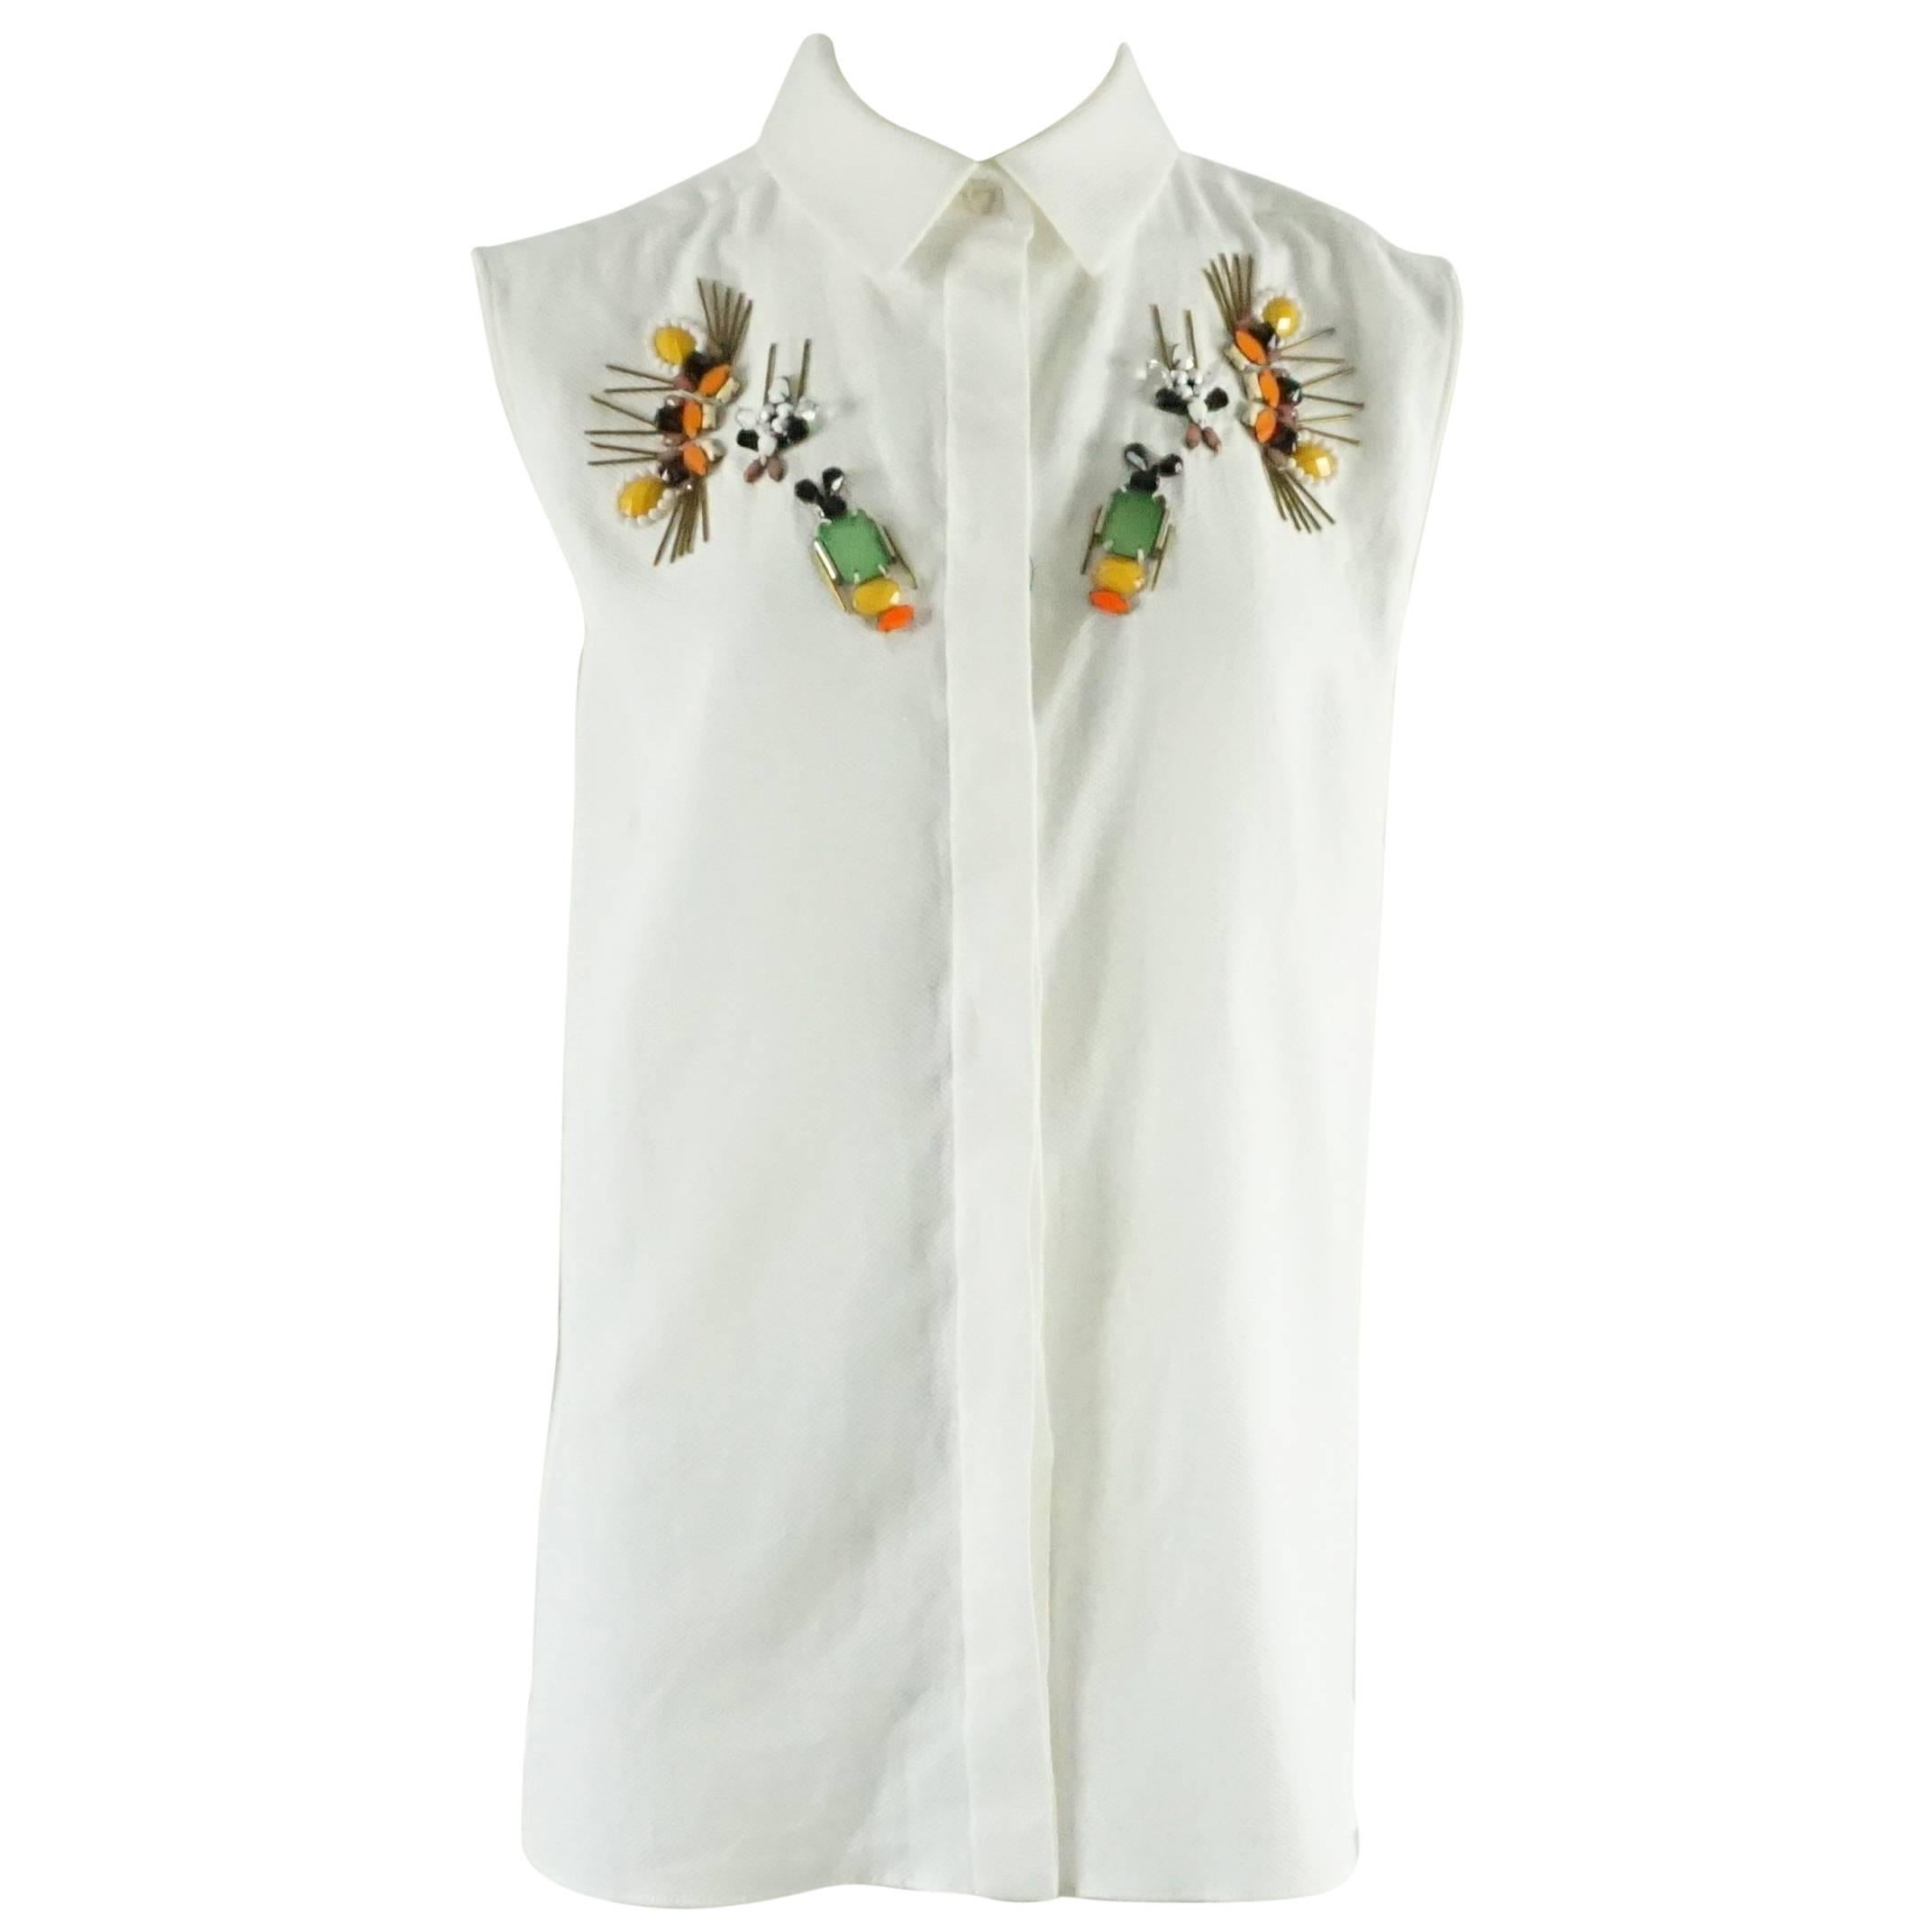 Stella McCartney White Cotton Pique Shirt with Stone Embellishment - 40 - NWT